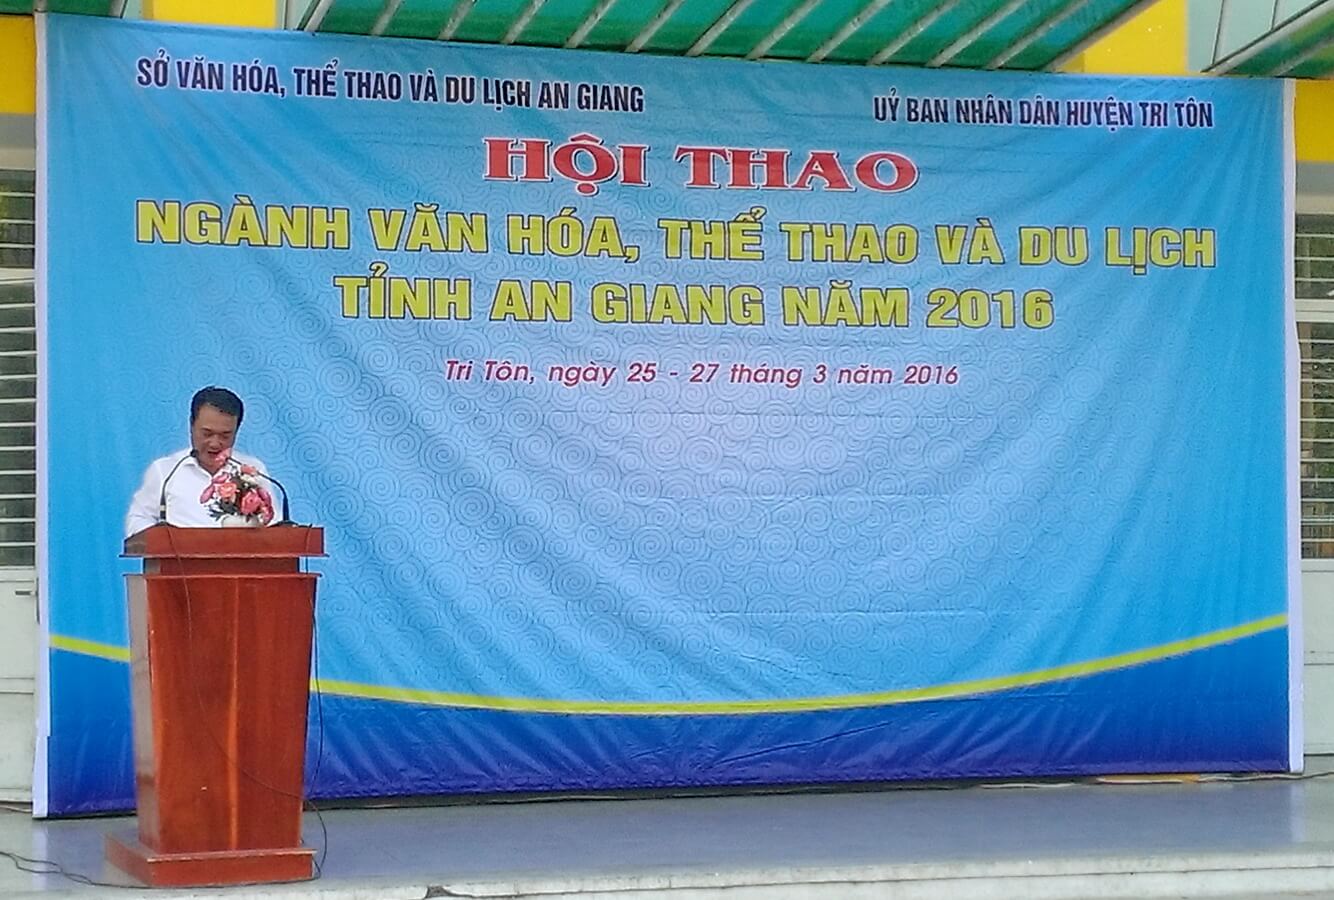 Vietravel đồng hành cùng hội thao ngành văn hóa, thể thao và du lịch tỉnh An Giang năm 2016